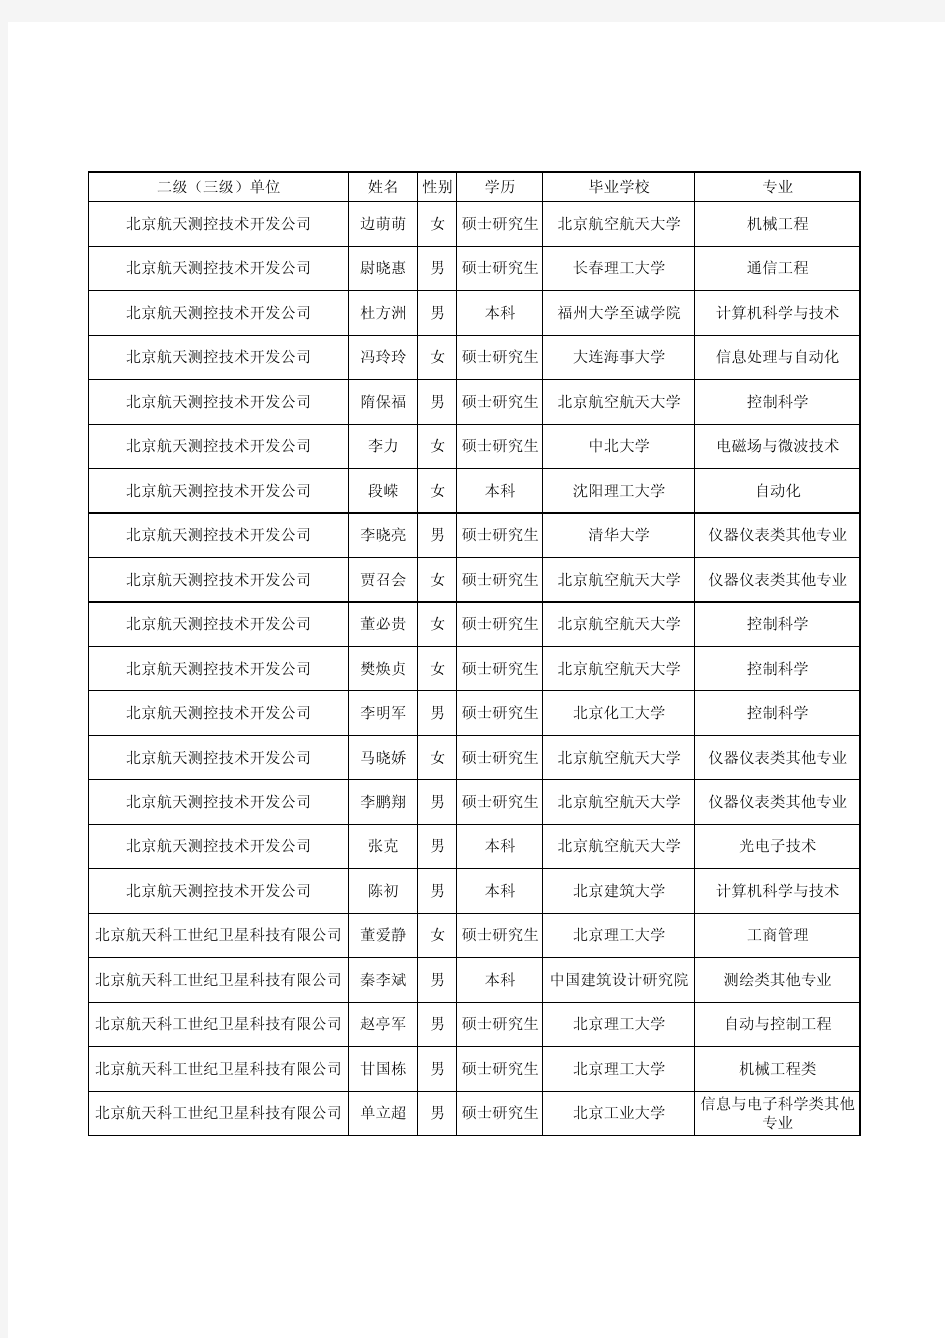 中国航天科工集团公司2013年拟接收毕业生名单